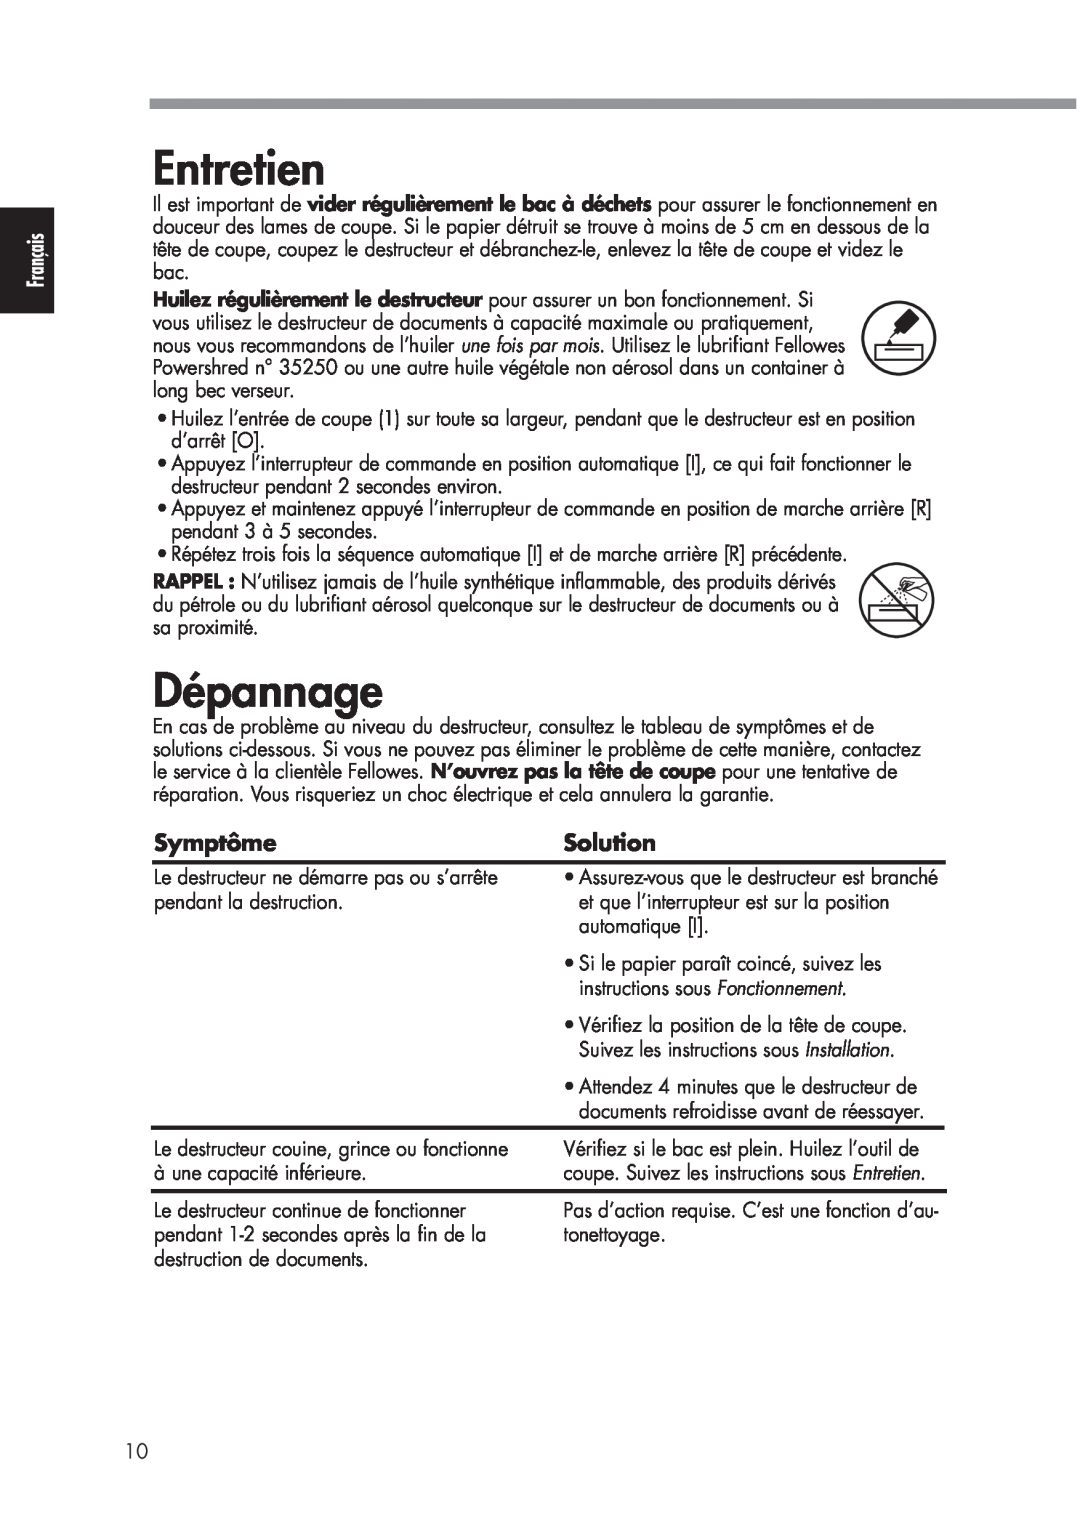 Fellowes P70CM manual Entretien, Dépannage, Symptôme, Solution 